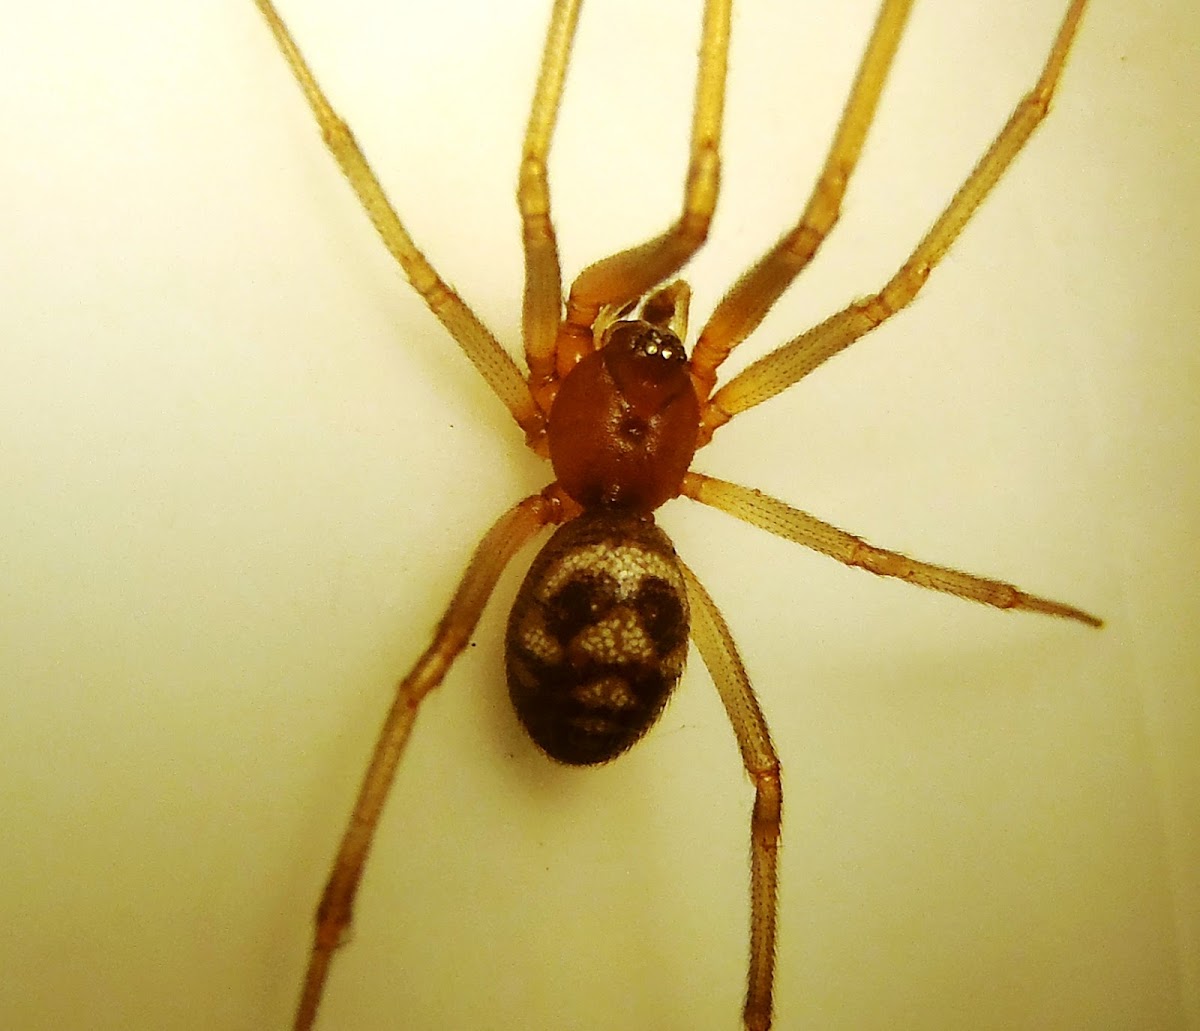 Domestic house spider. Araña de rincón